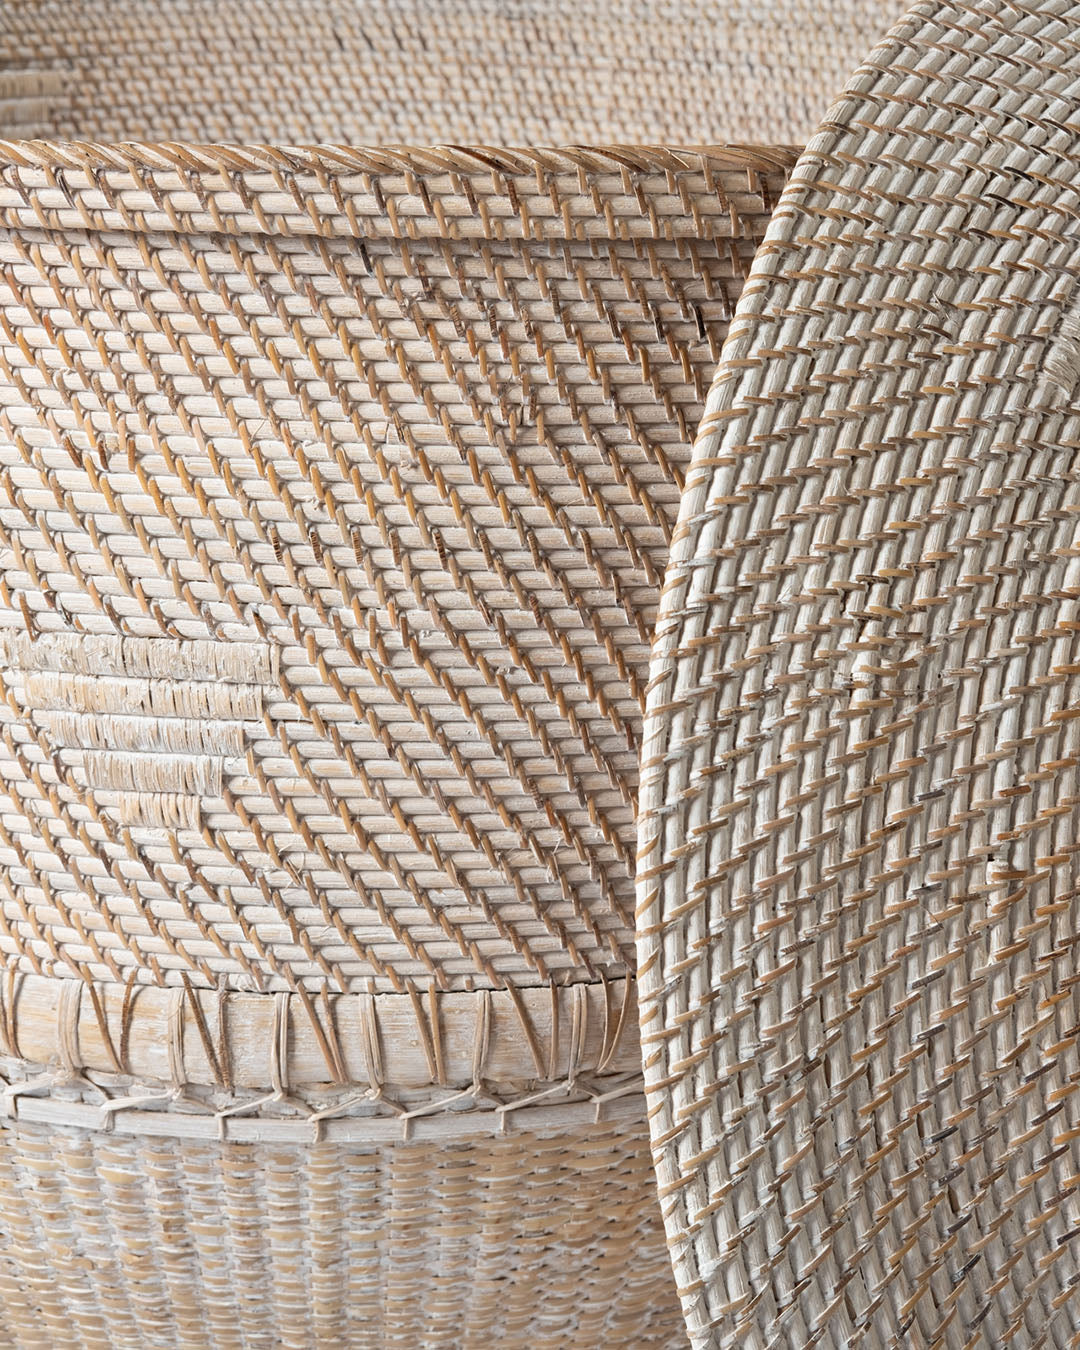 Cesto de ratán 100% natural Gigante Rangkasbitung decorativo con asas y tapa, hecho a mano acabado blanco con base de madera y trenzados diferentes, 110 de altura x 100 de diámetro, fabricado en Indonesia